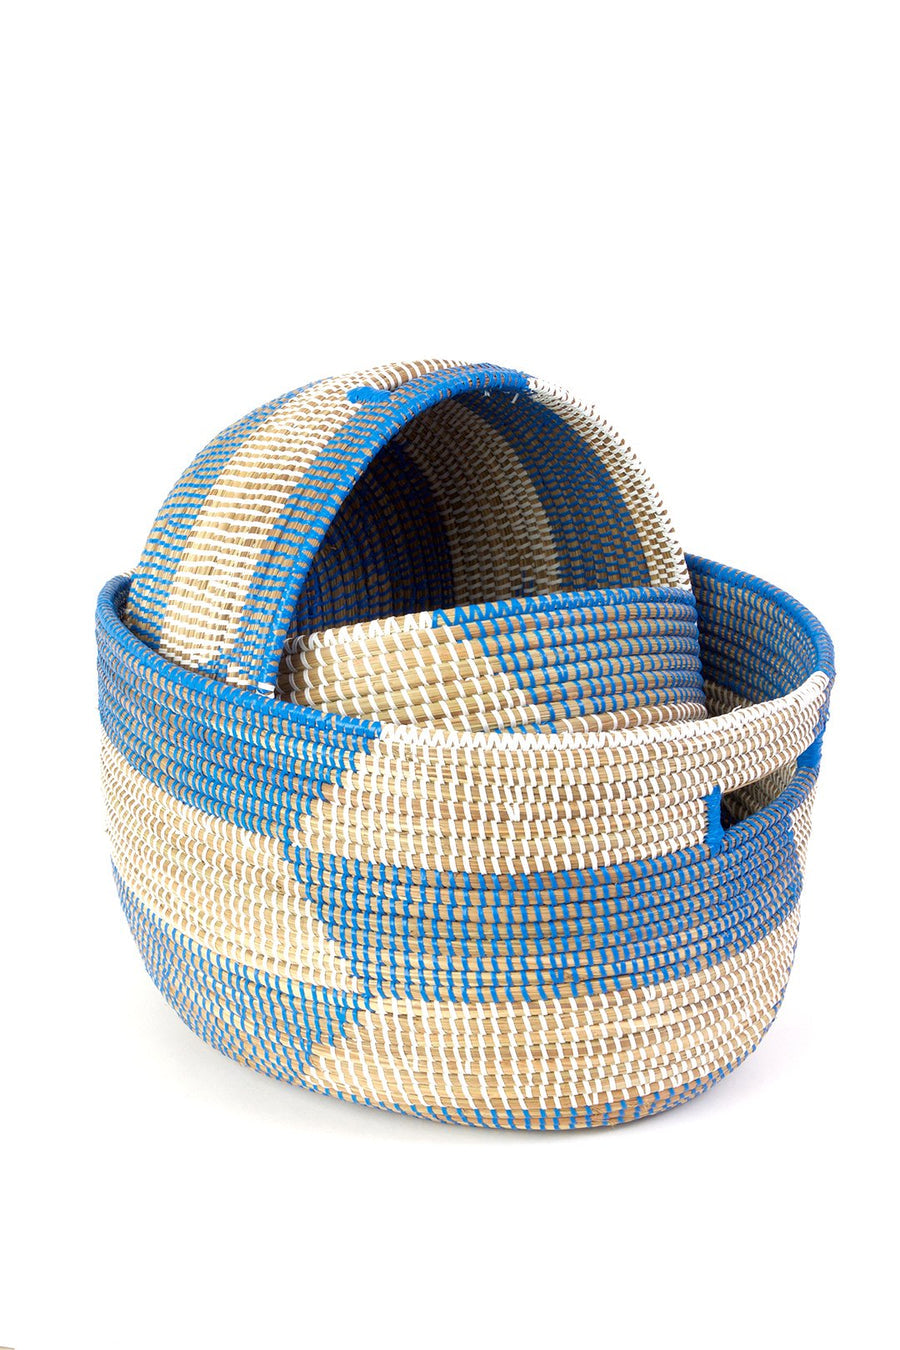 Blue Herringbone Sewing Baskets